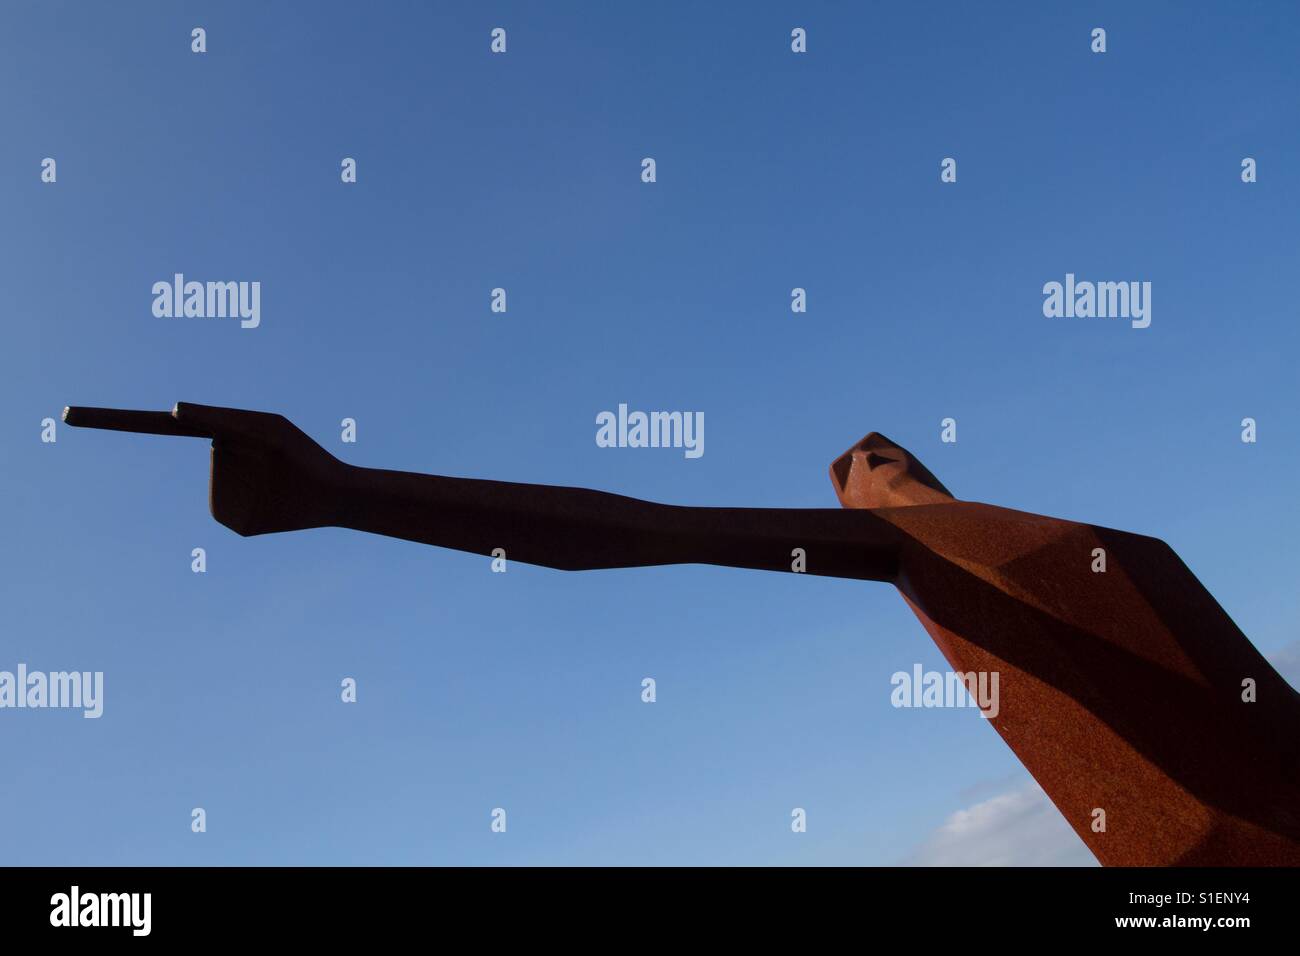 Eine hohe, schlanke Statue einer männlichen Figur mit ausgestrecktem Arm und zeigte mit dem Finger um den Weg mit einem blauen Himmelshintergrund zeigen. Stockfoto